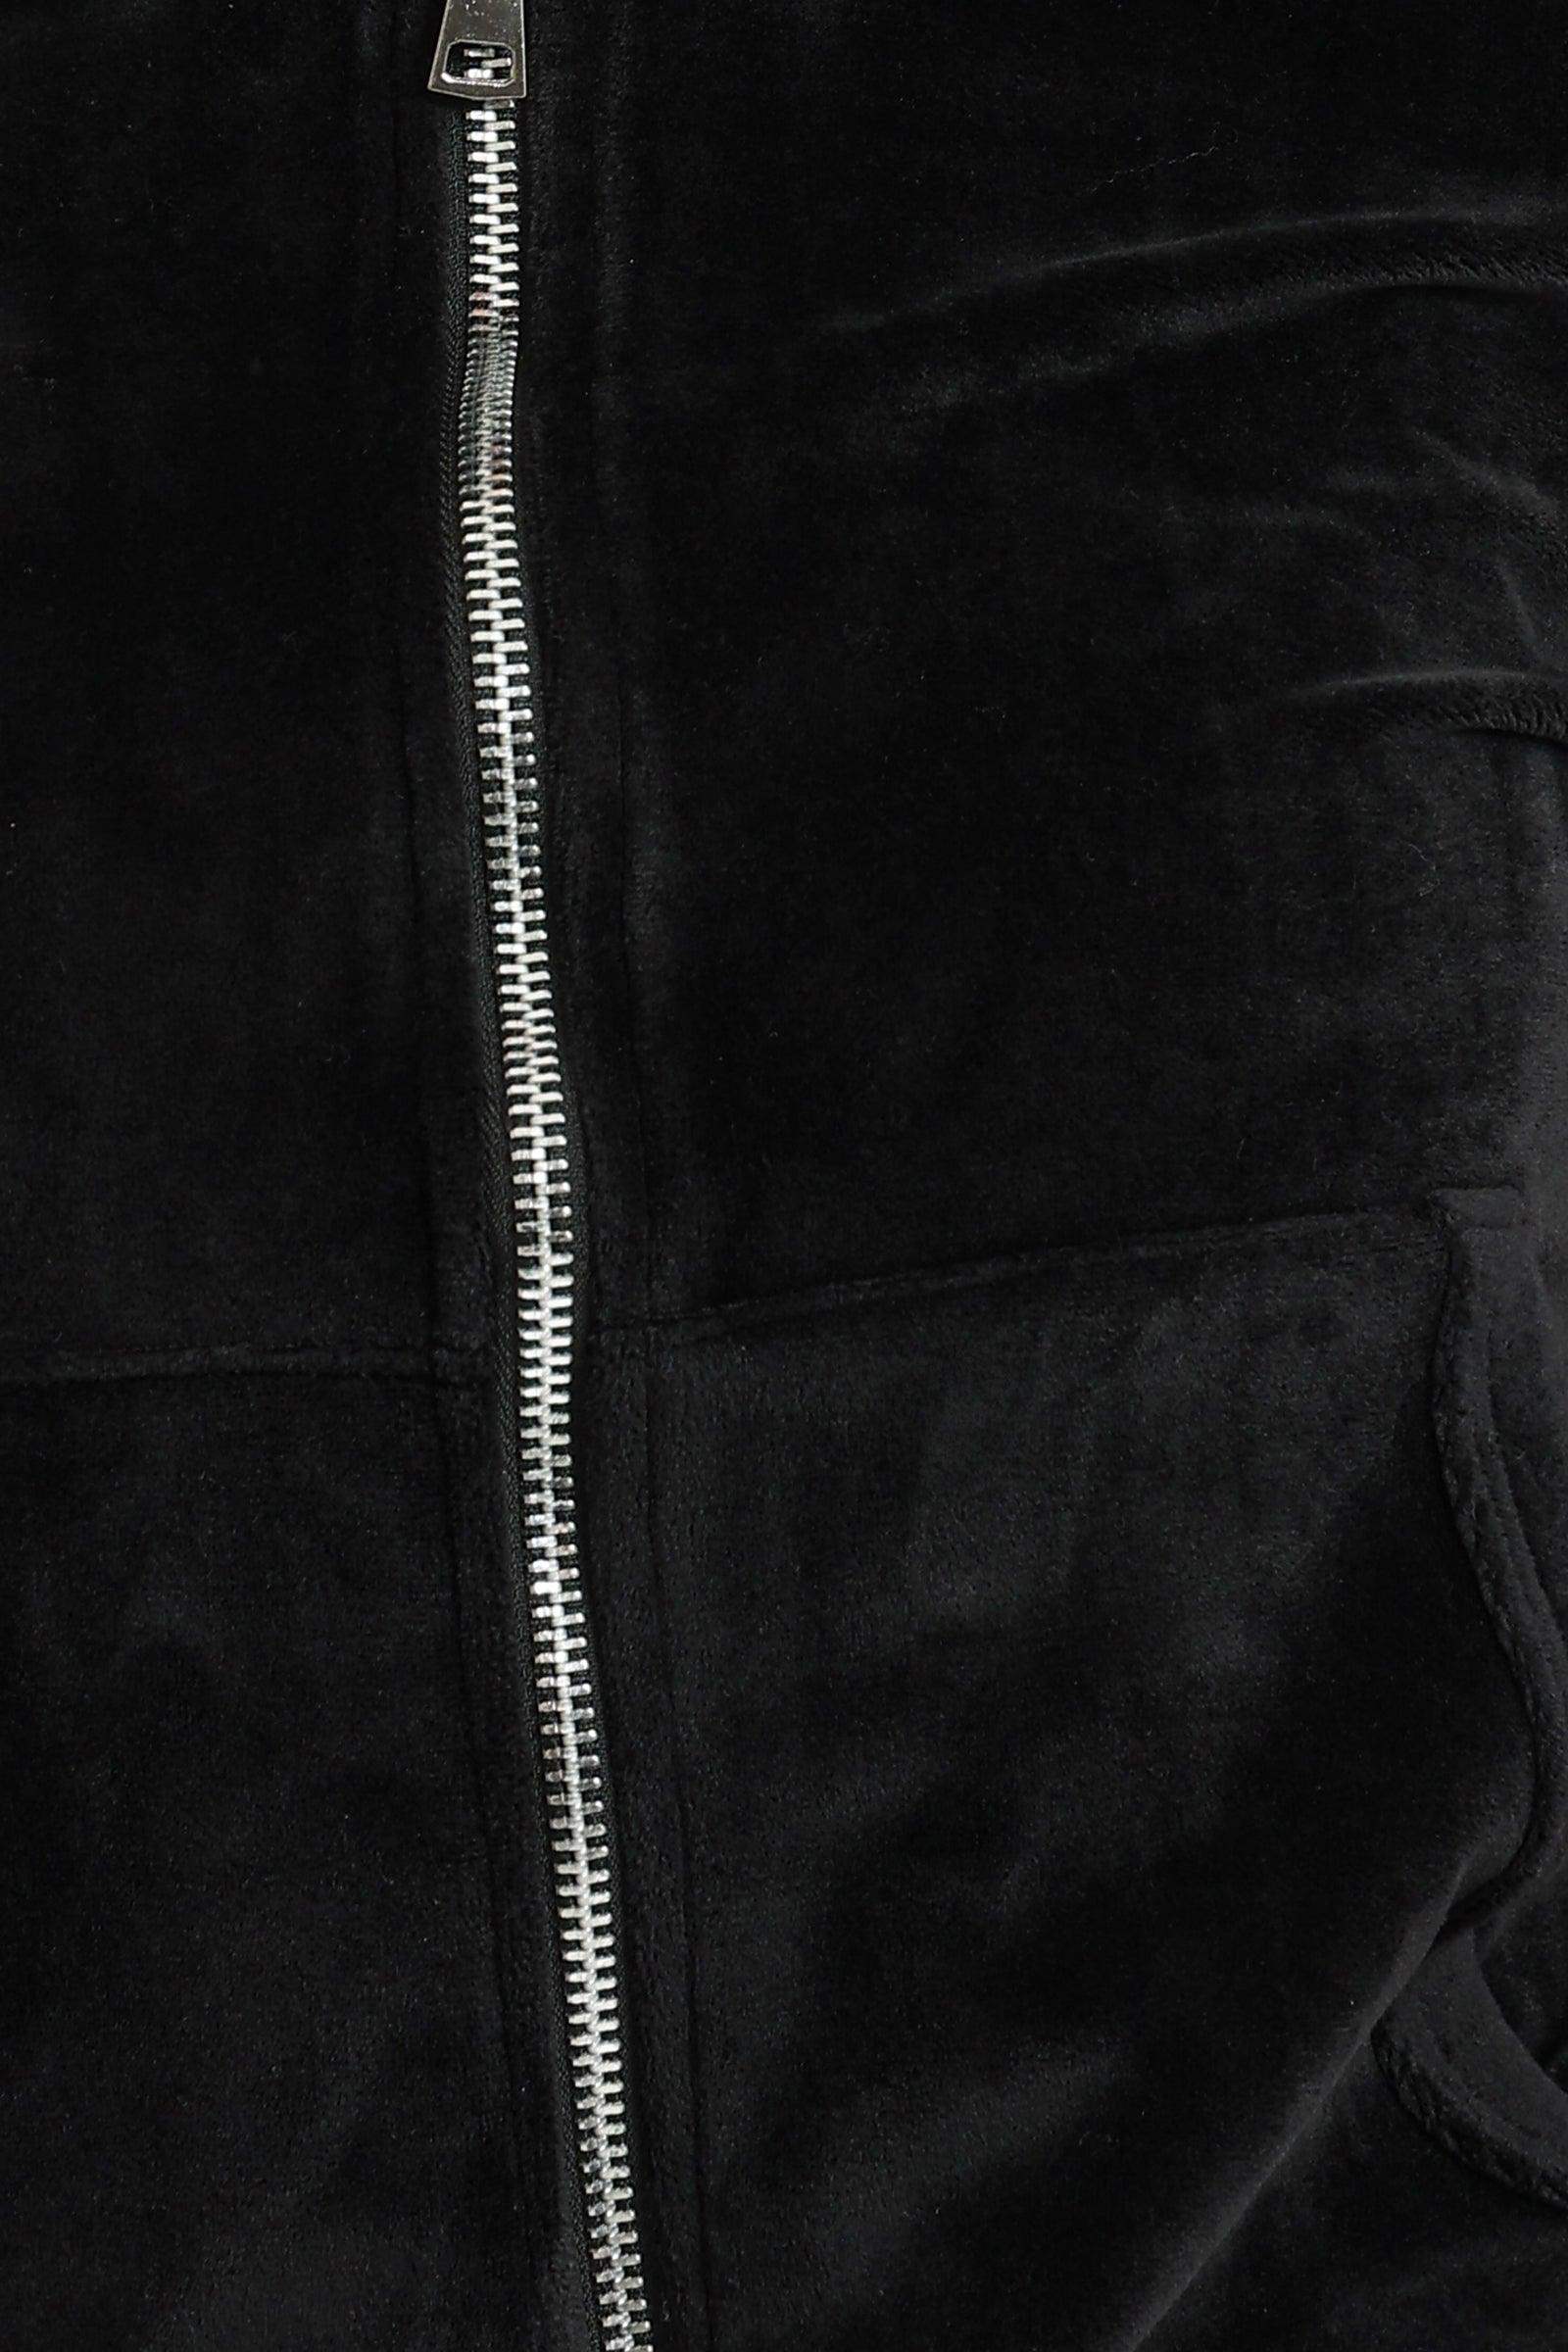 Black Zipper Closure Pyjama Set - Carina - كارينا